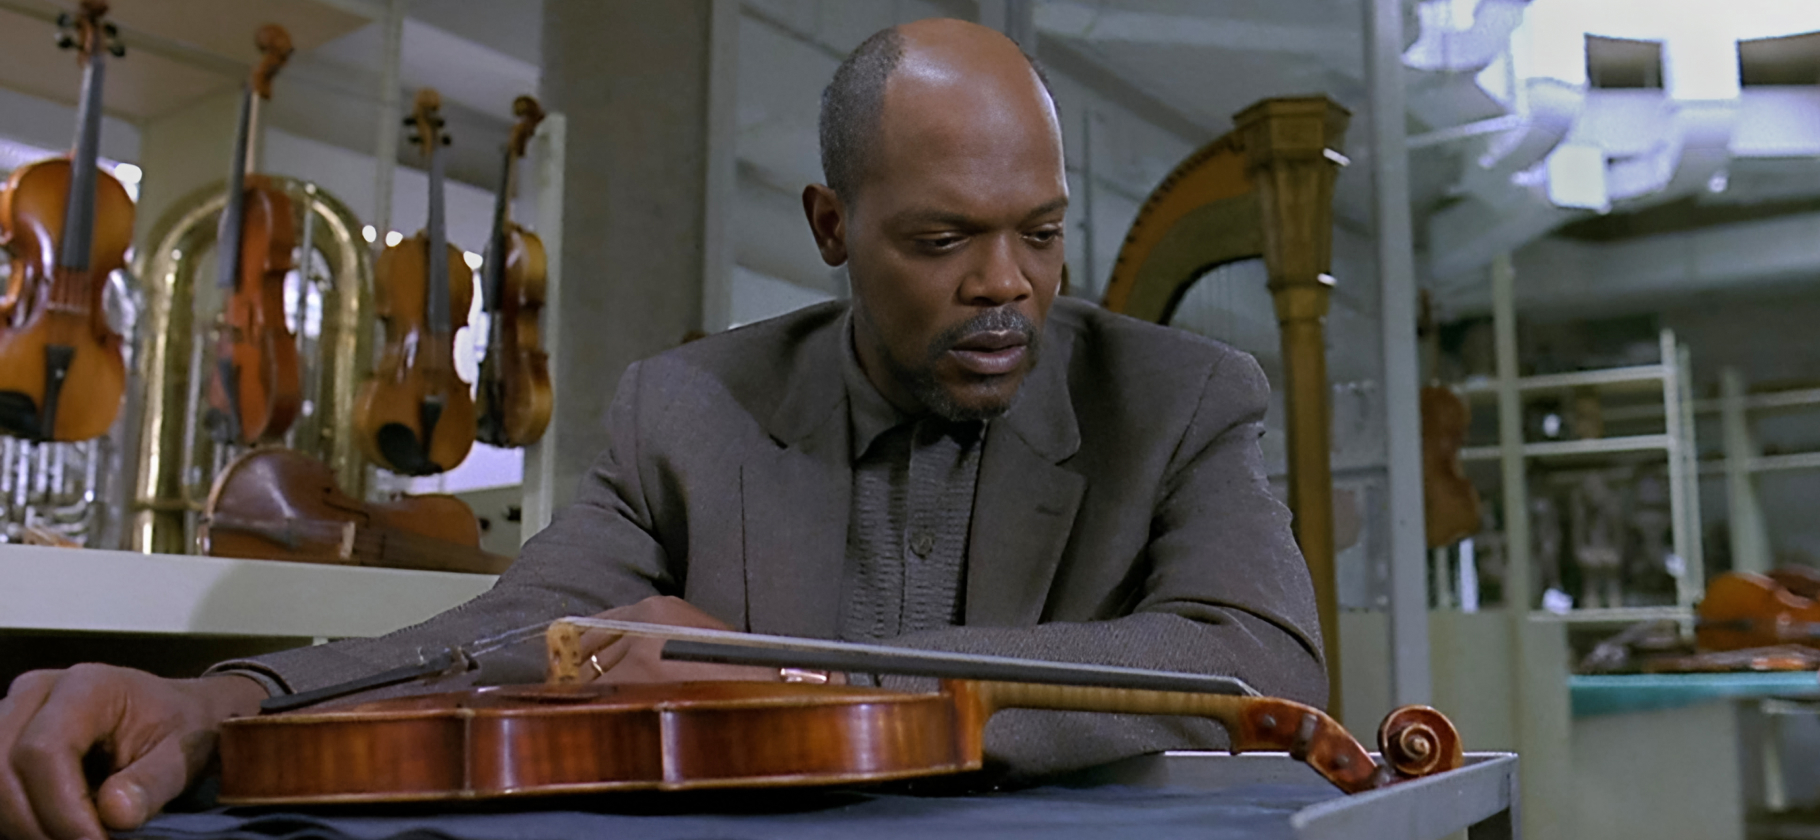 «Задумываешься о цене таланта»: ре­комендую фильм «Красная скрипка» с Сэ­мюэлем Л. Джексоном